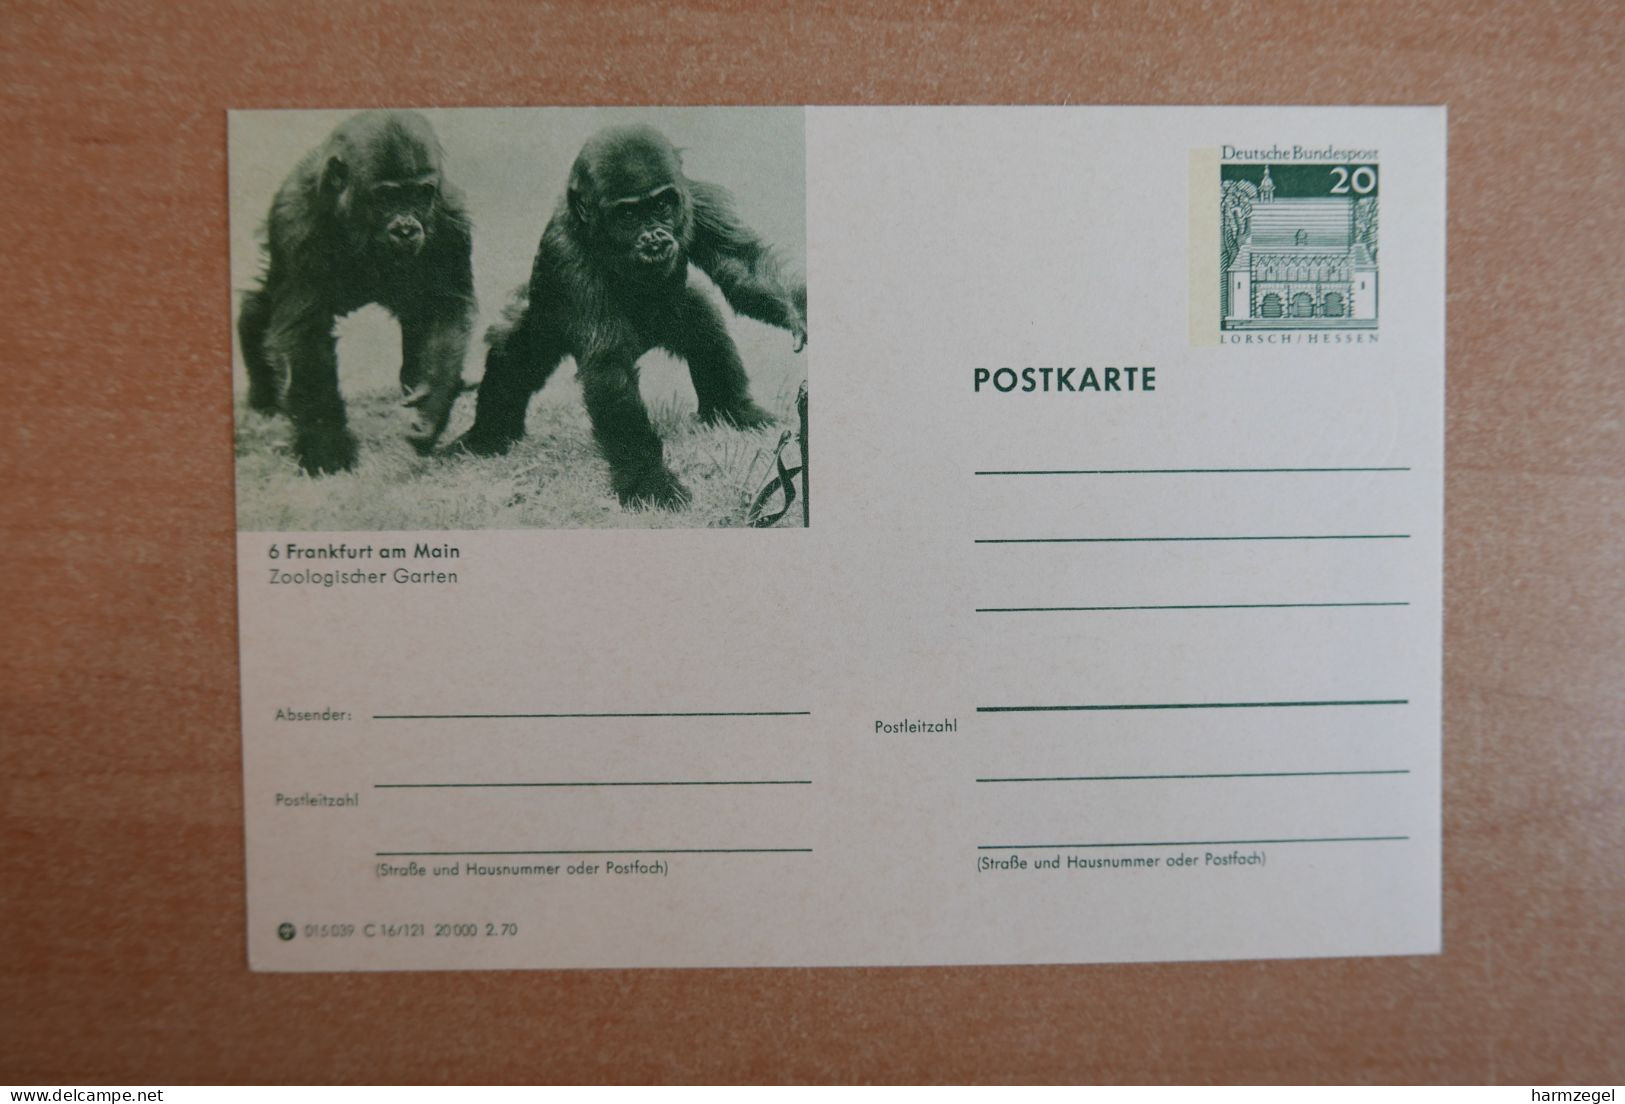 Postal Stationery, Monkey - Mono